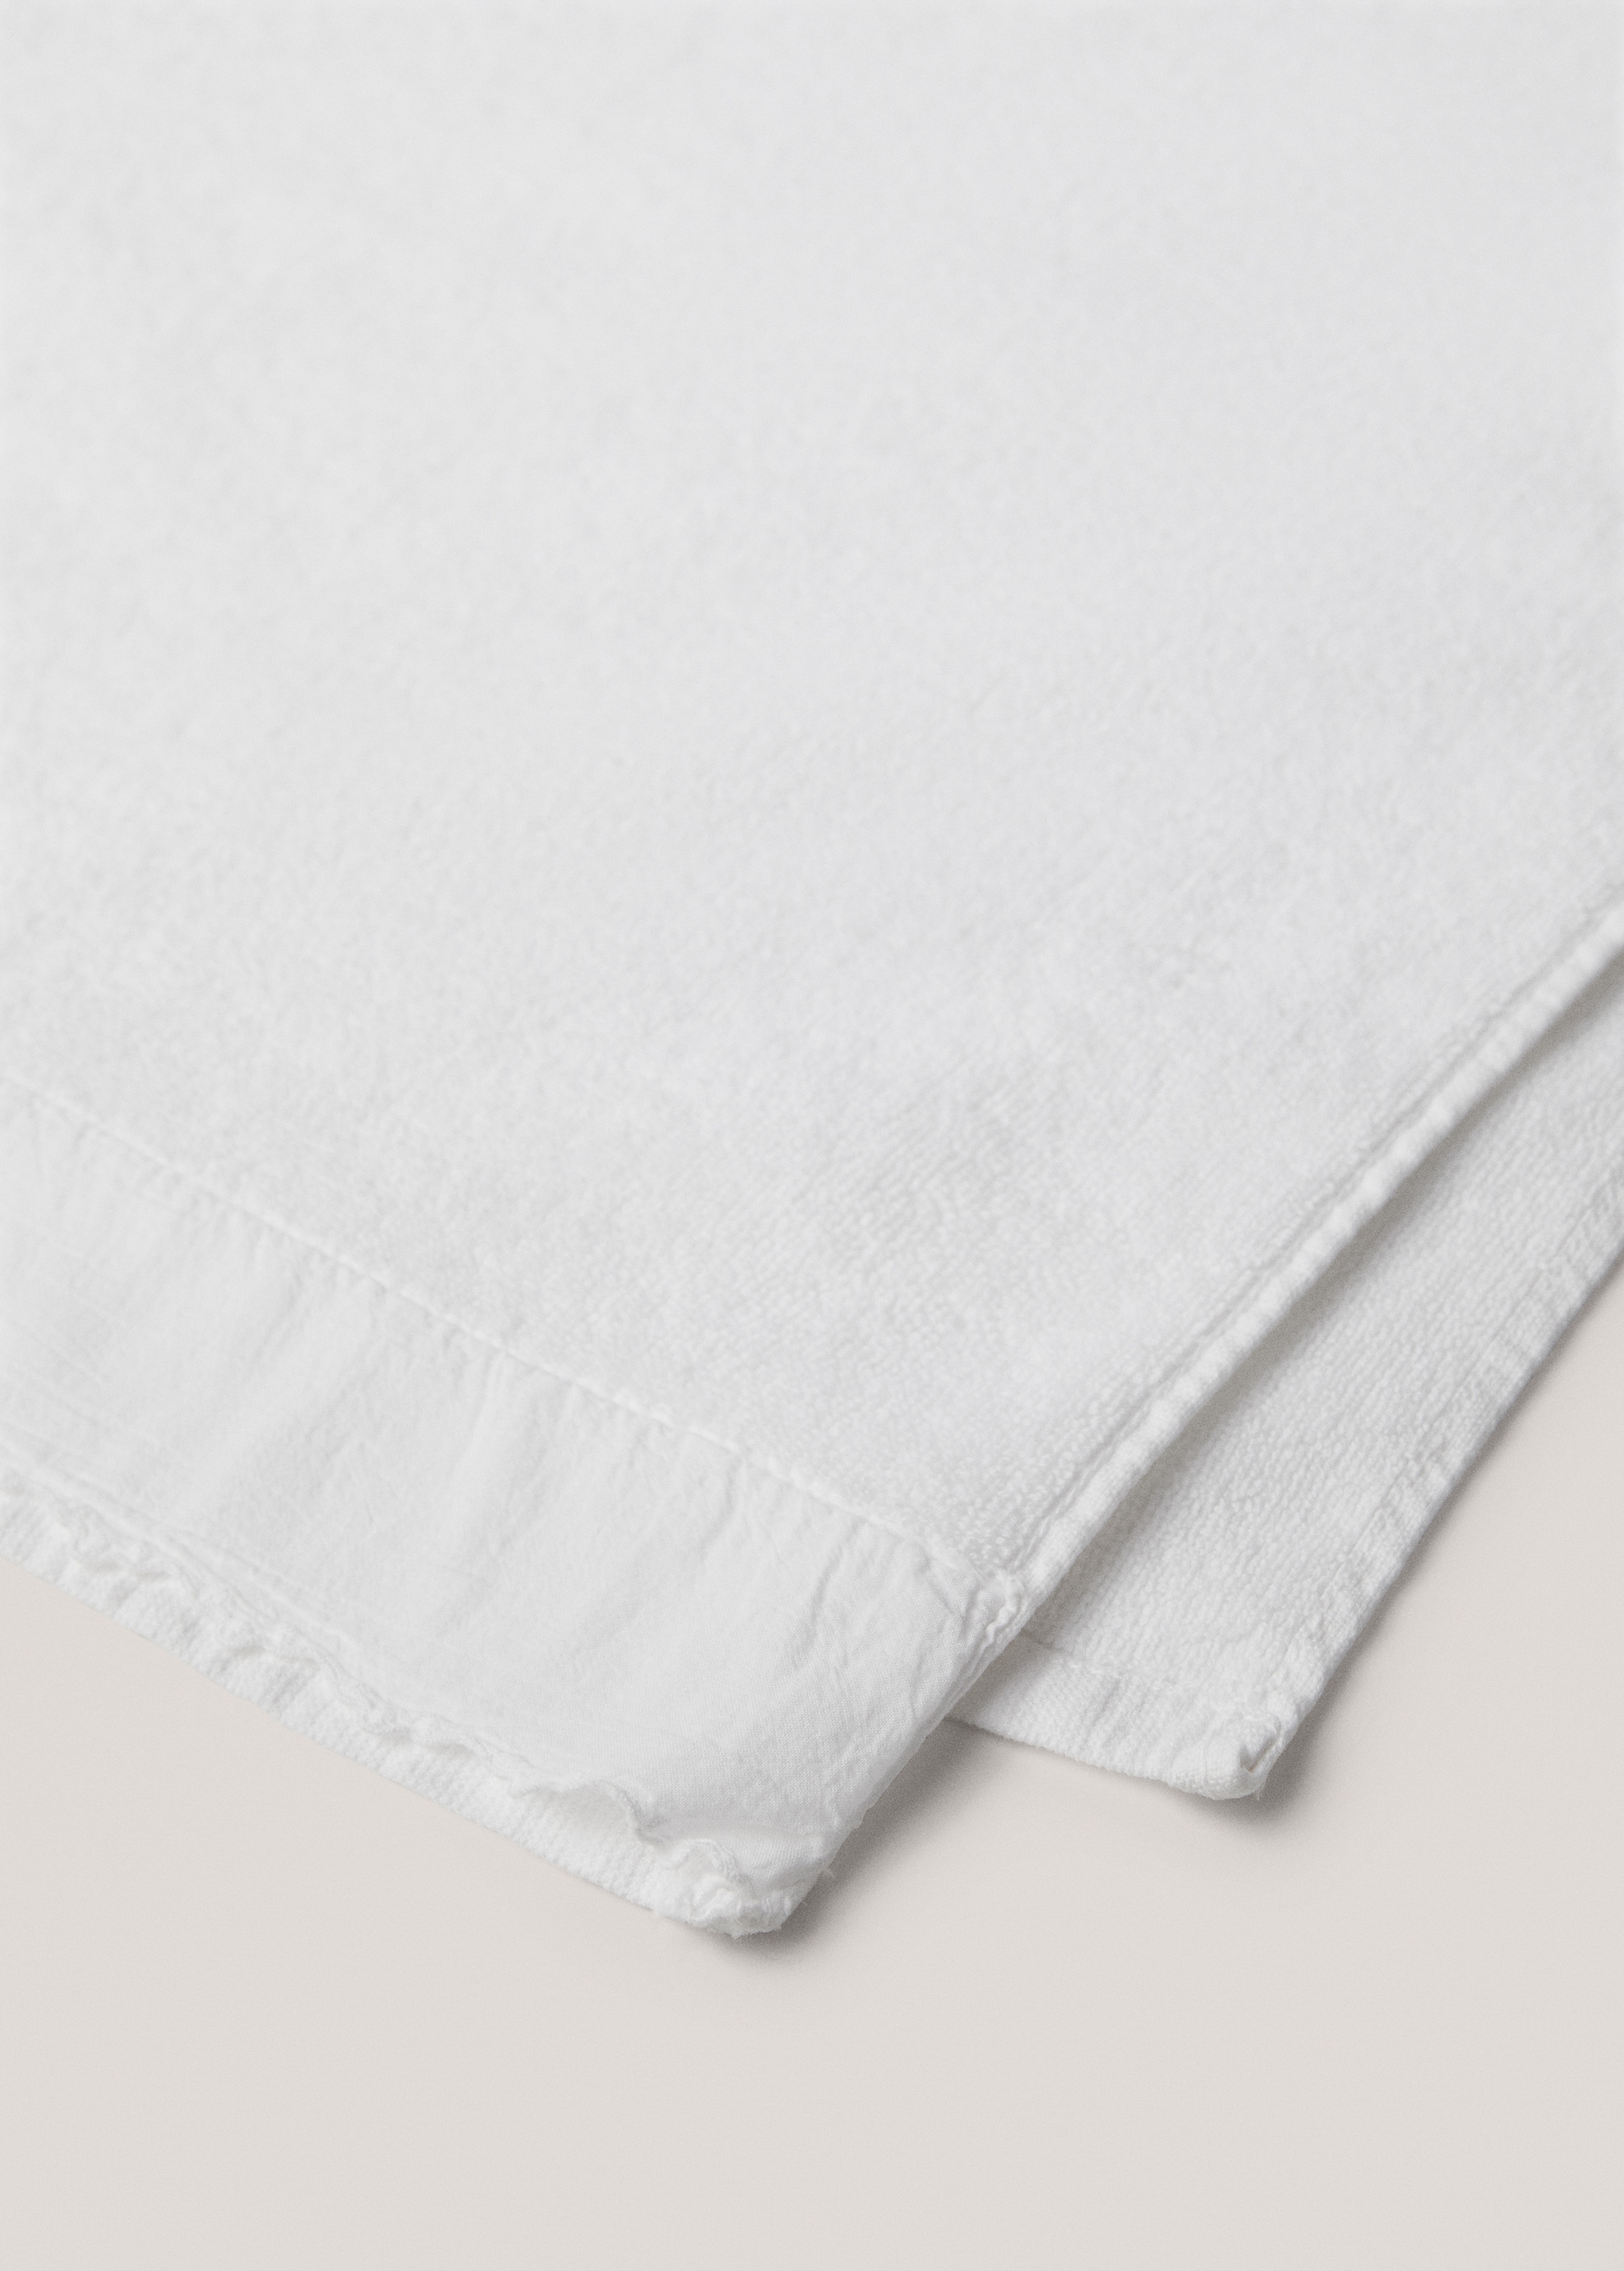 Cotton bath towel 50x90cm - Details of the article 2